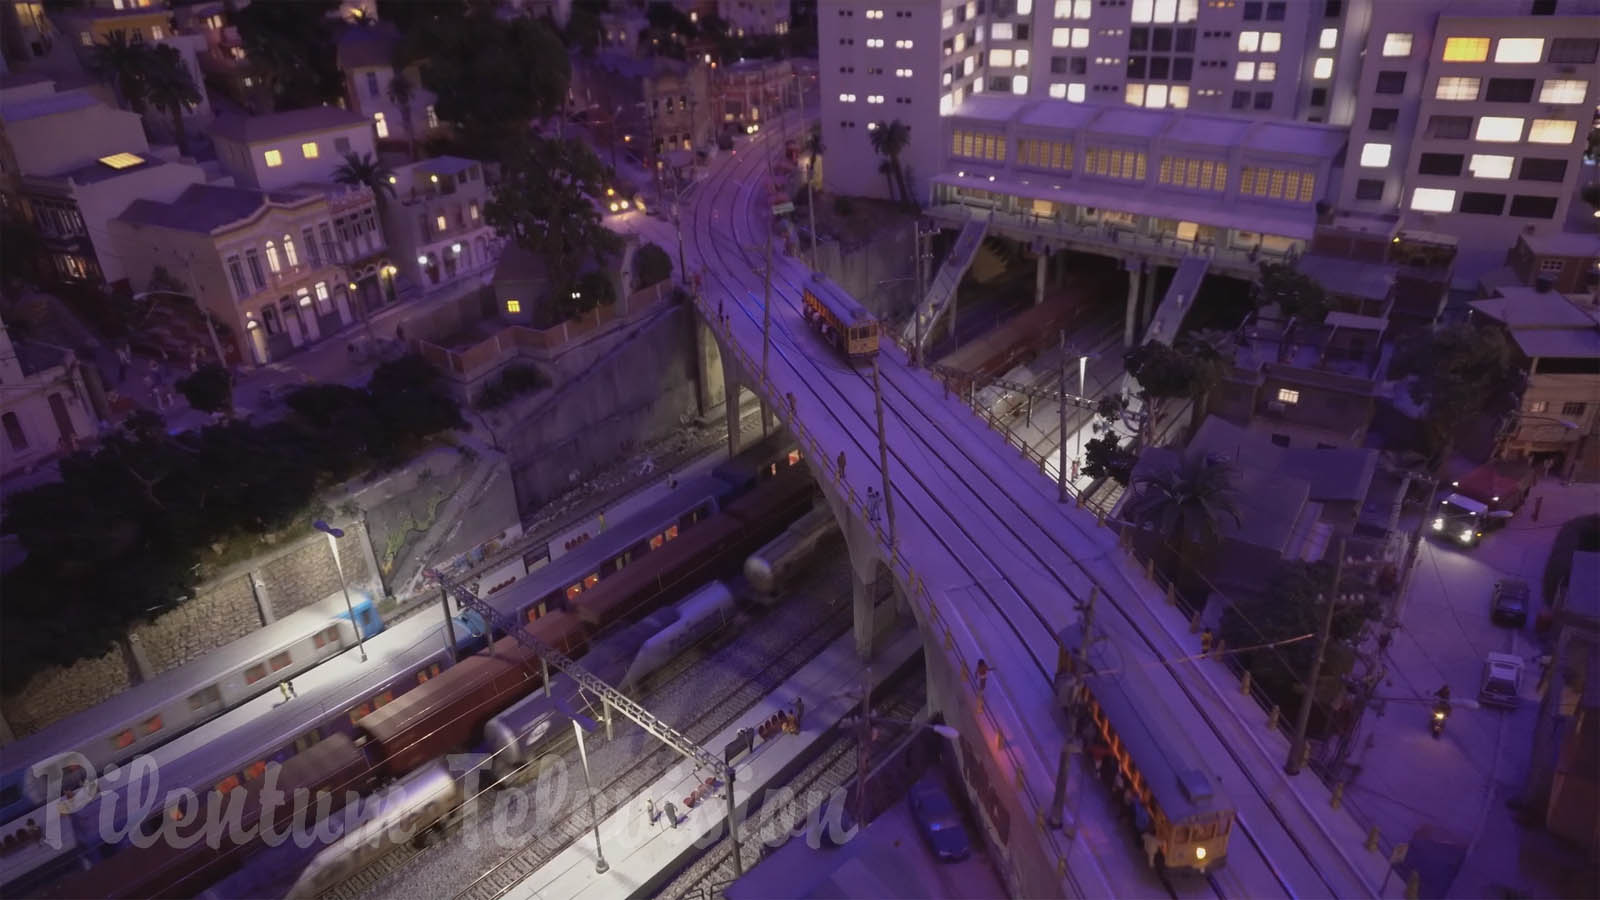 Diorama fantastis kota Rio de Janeiro di Brasil: Tata letak kereta api model yang luar biasa dalam Skala HO